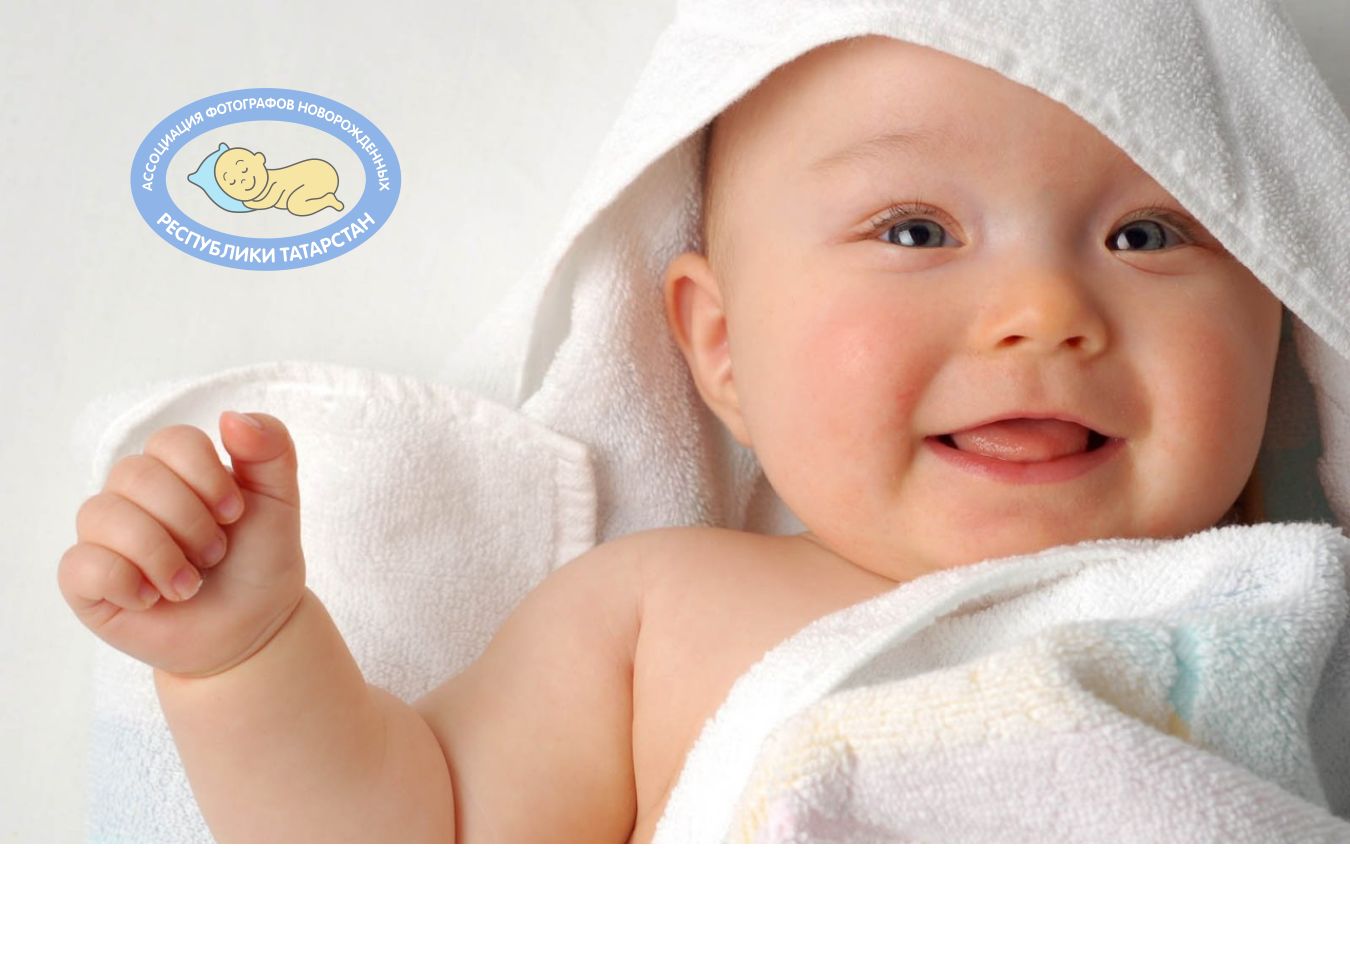 Логотип для Ассоциация фотографов новорождённых  - дизайнер lum1x94